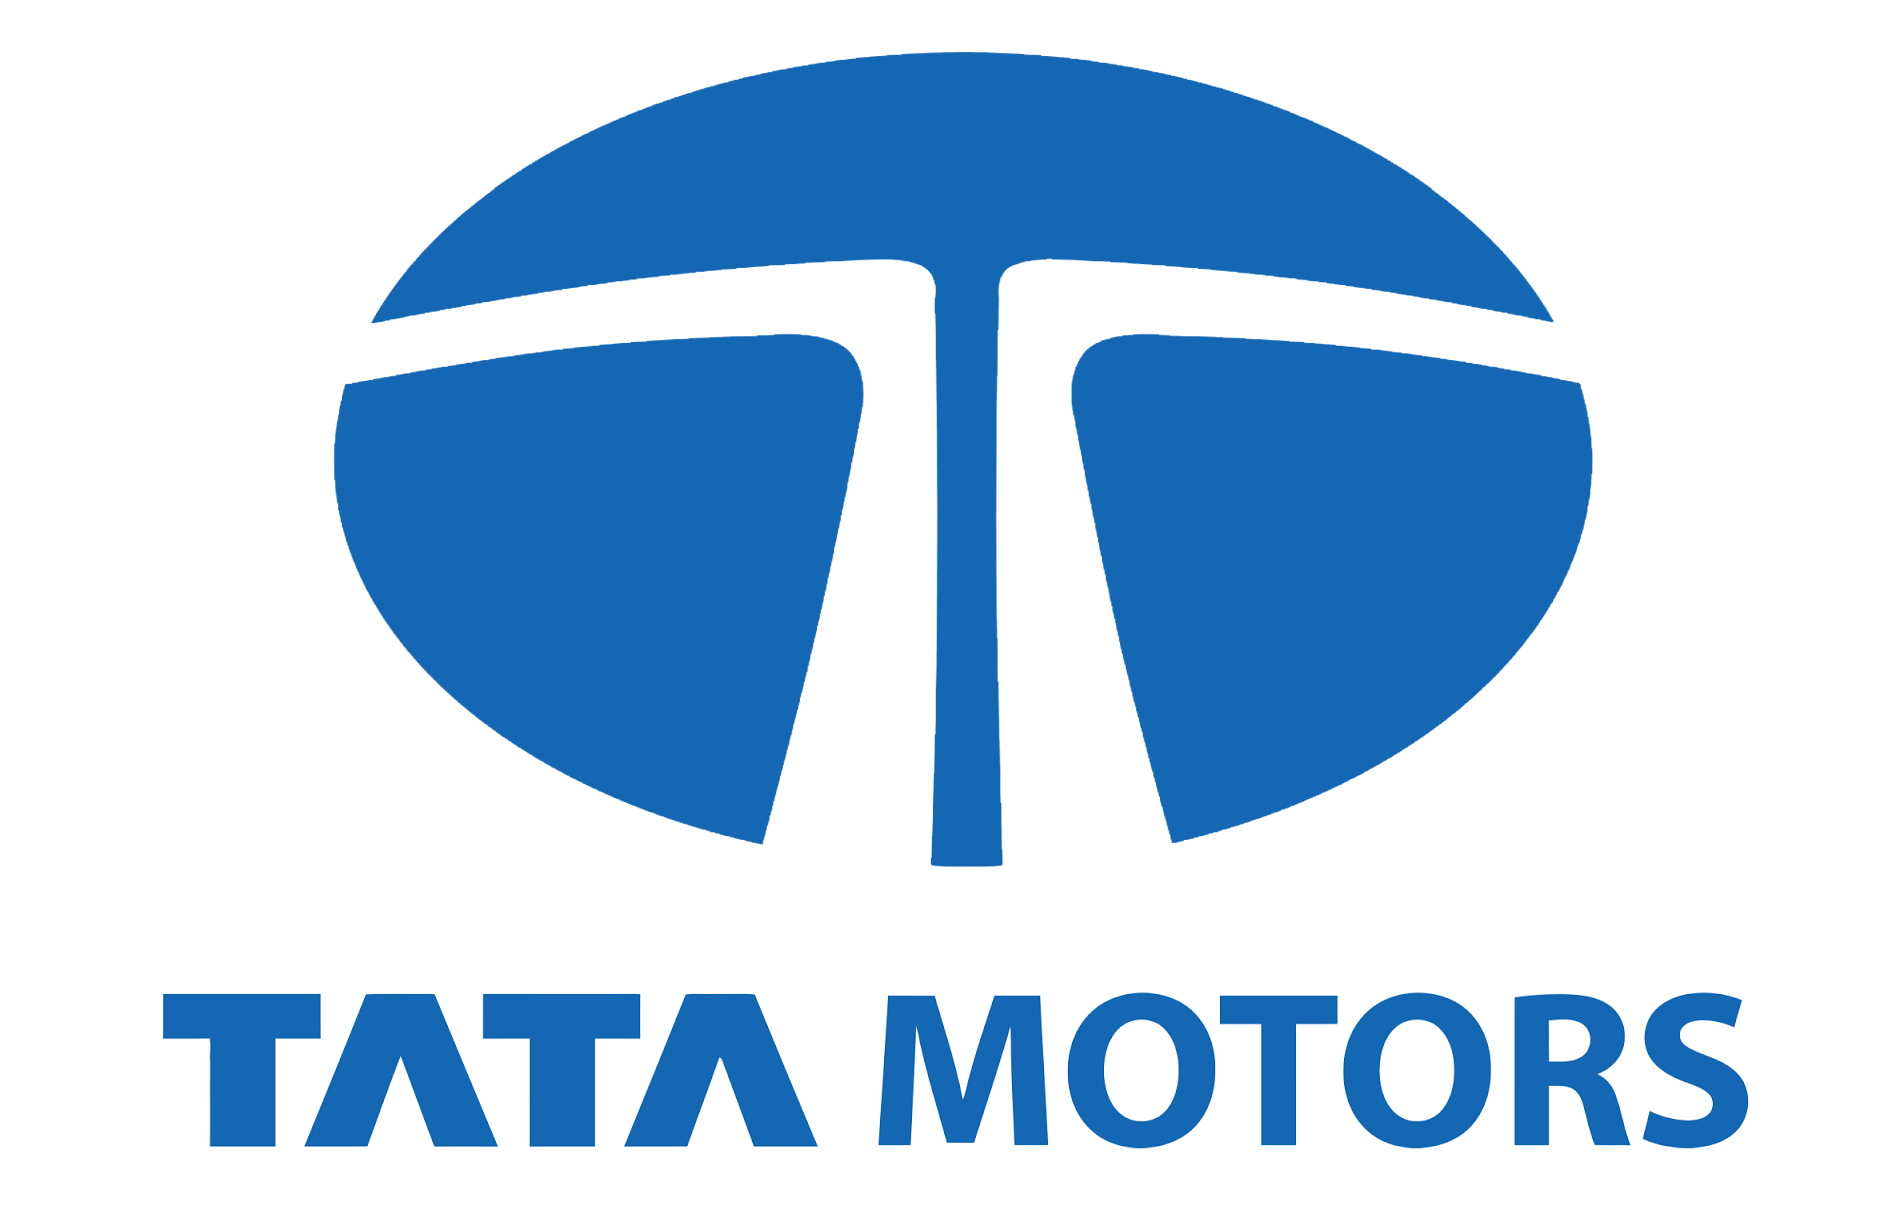 Tata Motors Cars Service Centre - Midas Motors|Show Room|Automotive